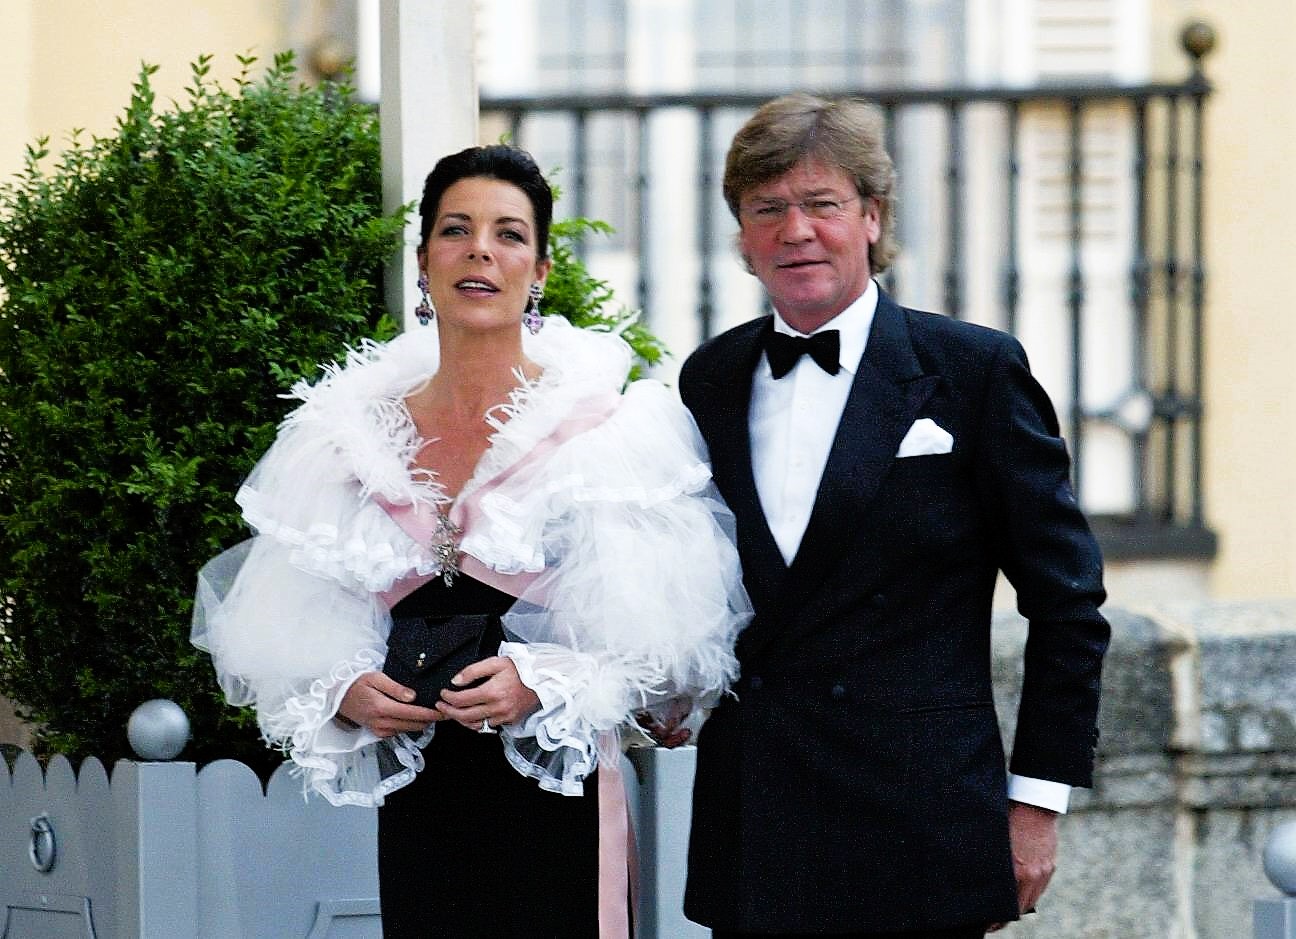 Scheidung nach 14 Jahren Ehe! - Prinzessin Caroline von Monaco will sich trennen!